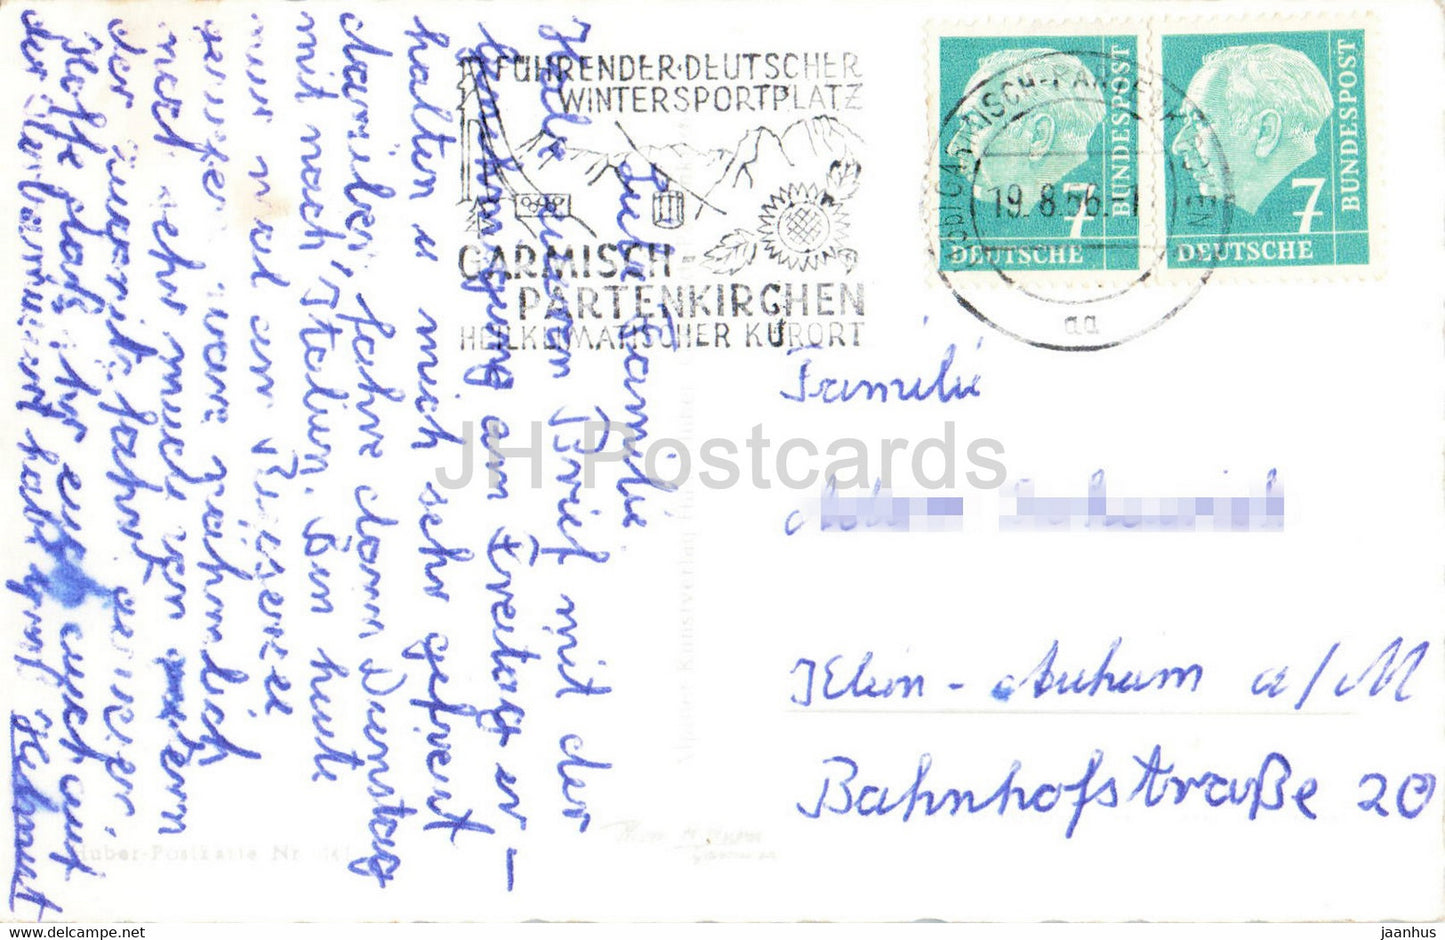 Riessersee gegen Zugspitzgruppe - alte Postkarte - 1956 - Deutschland - gebraucht